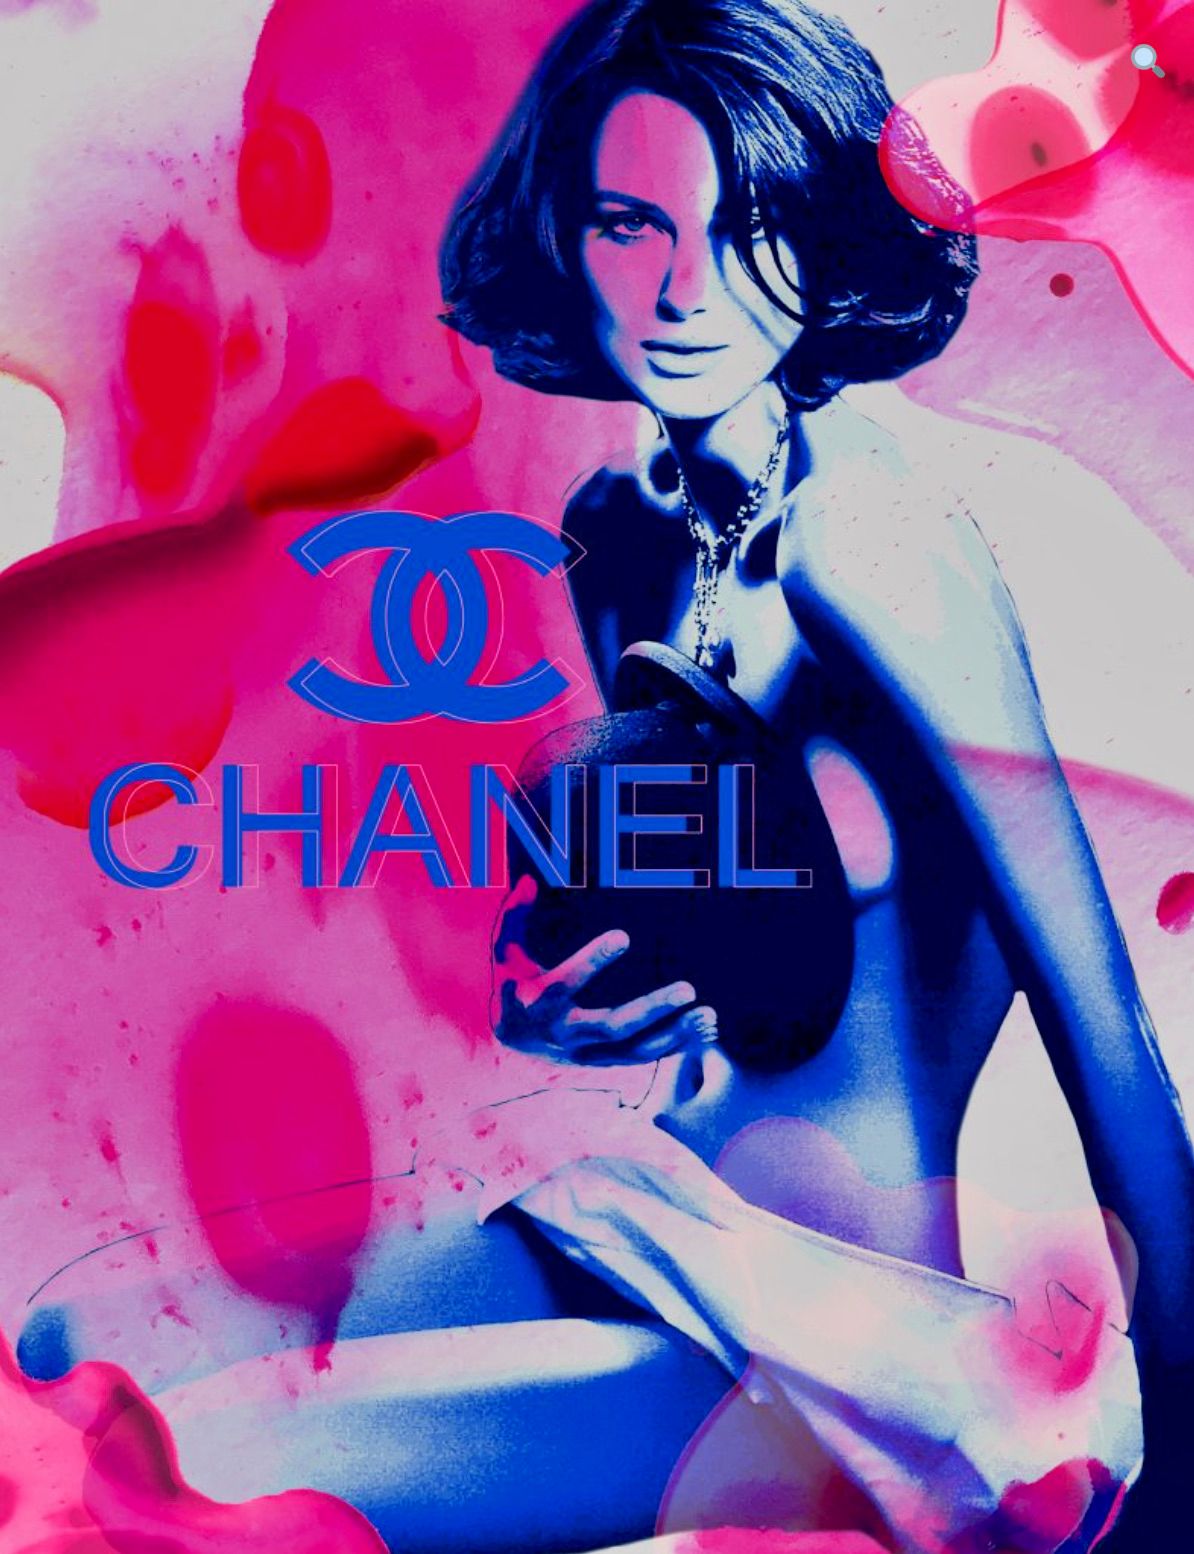 Nathali von Kretschmann collage abstrait Keira Knightley nue superposition logo Chanel peinture rose